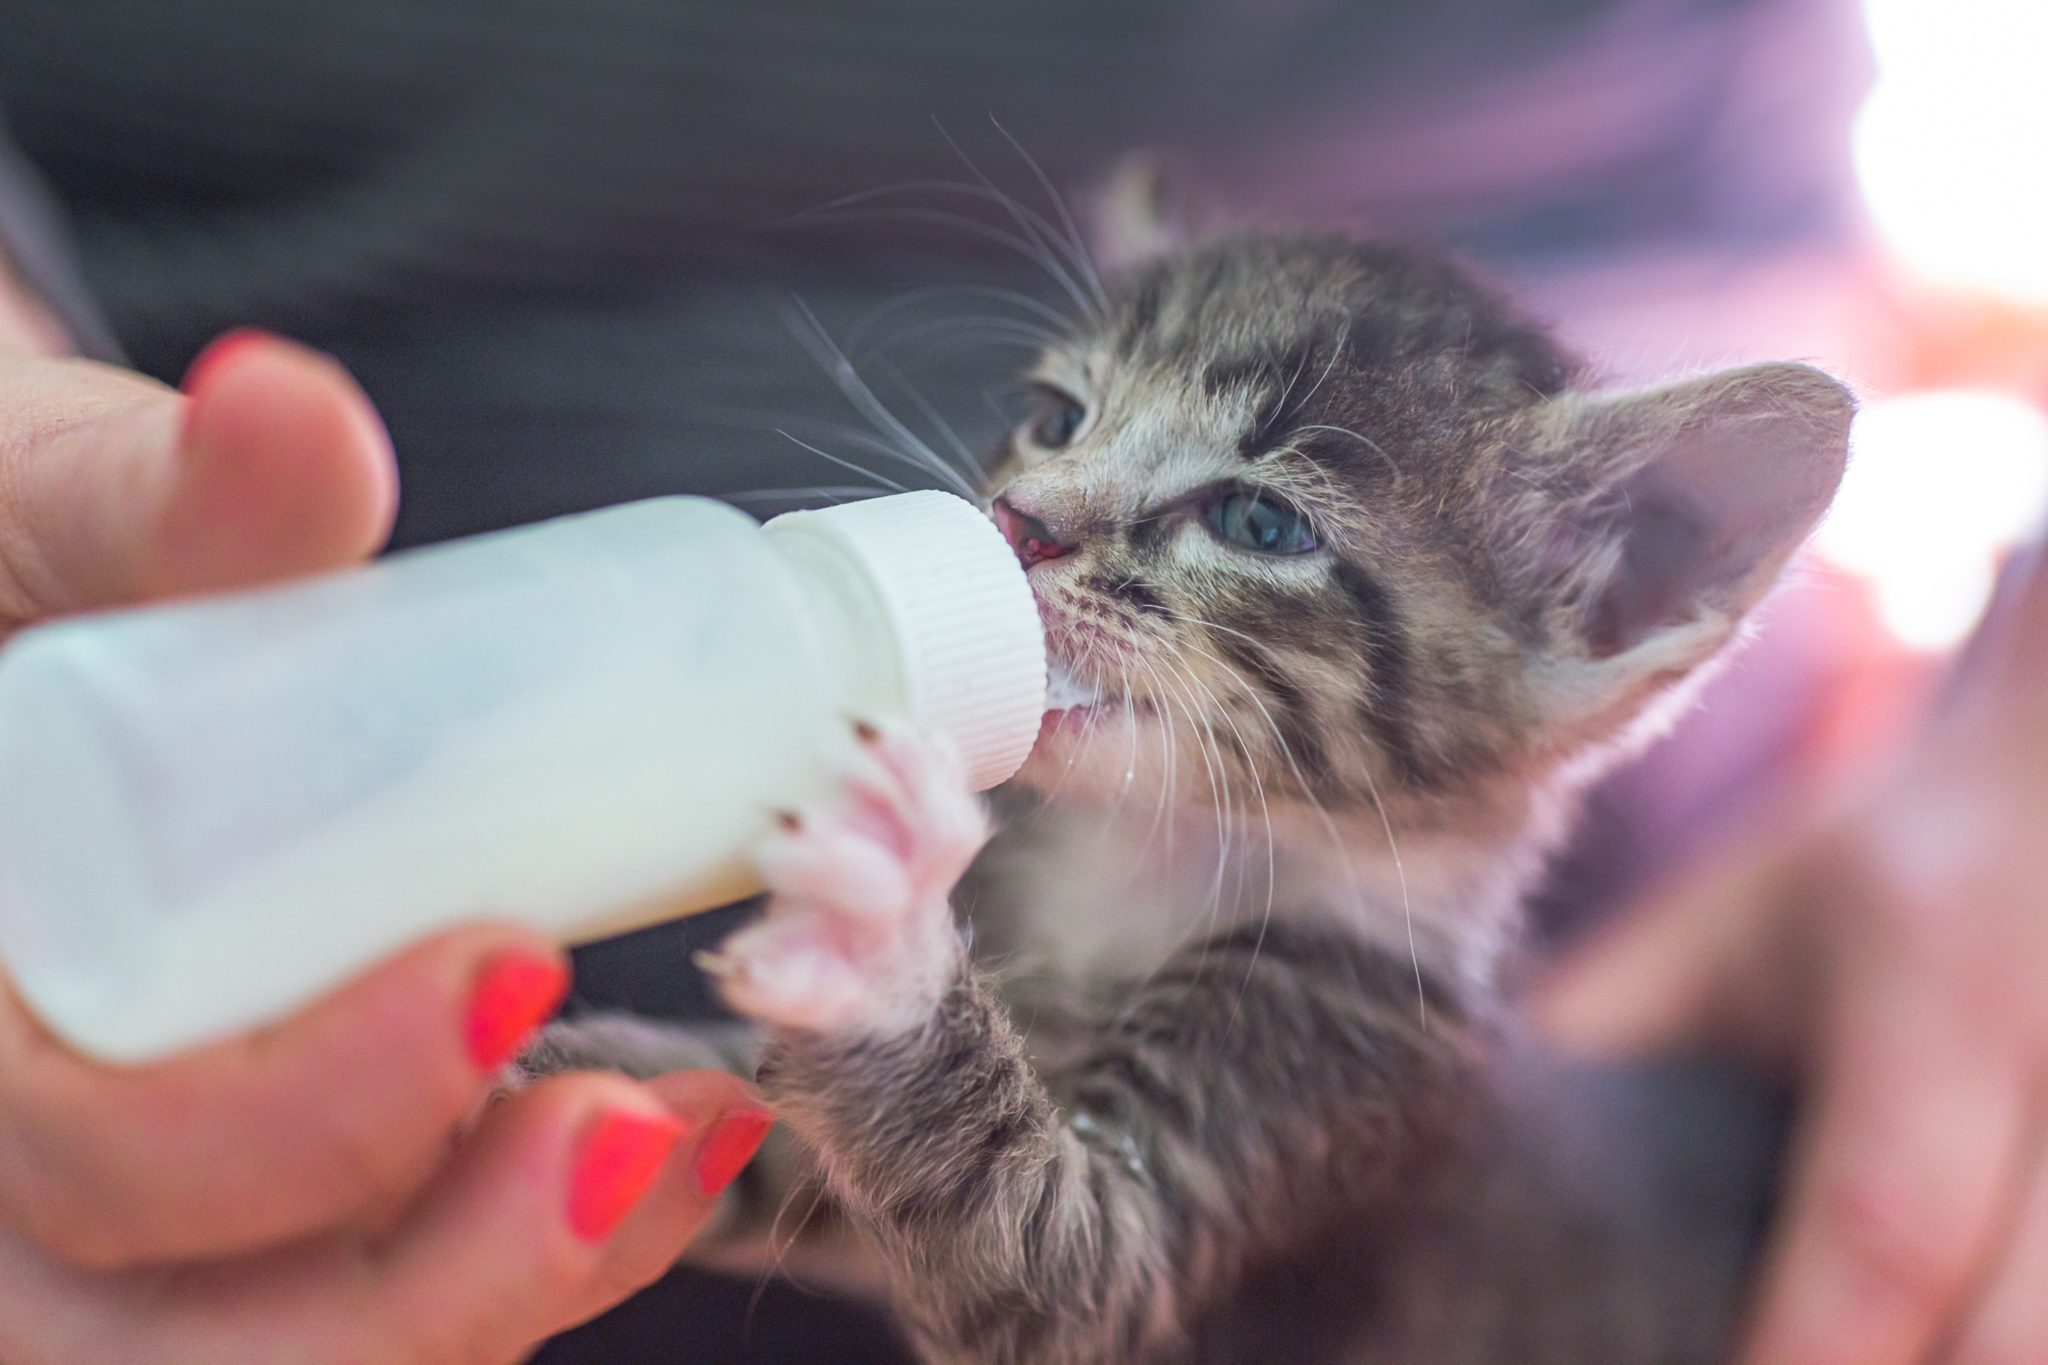 Le petit chaton gris boit du lait d'une bouteille.